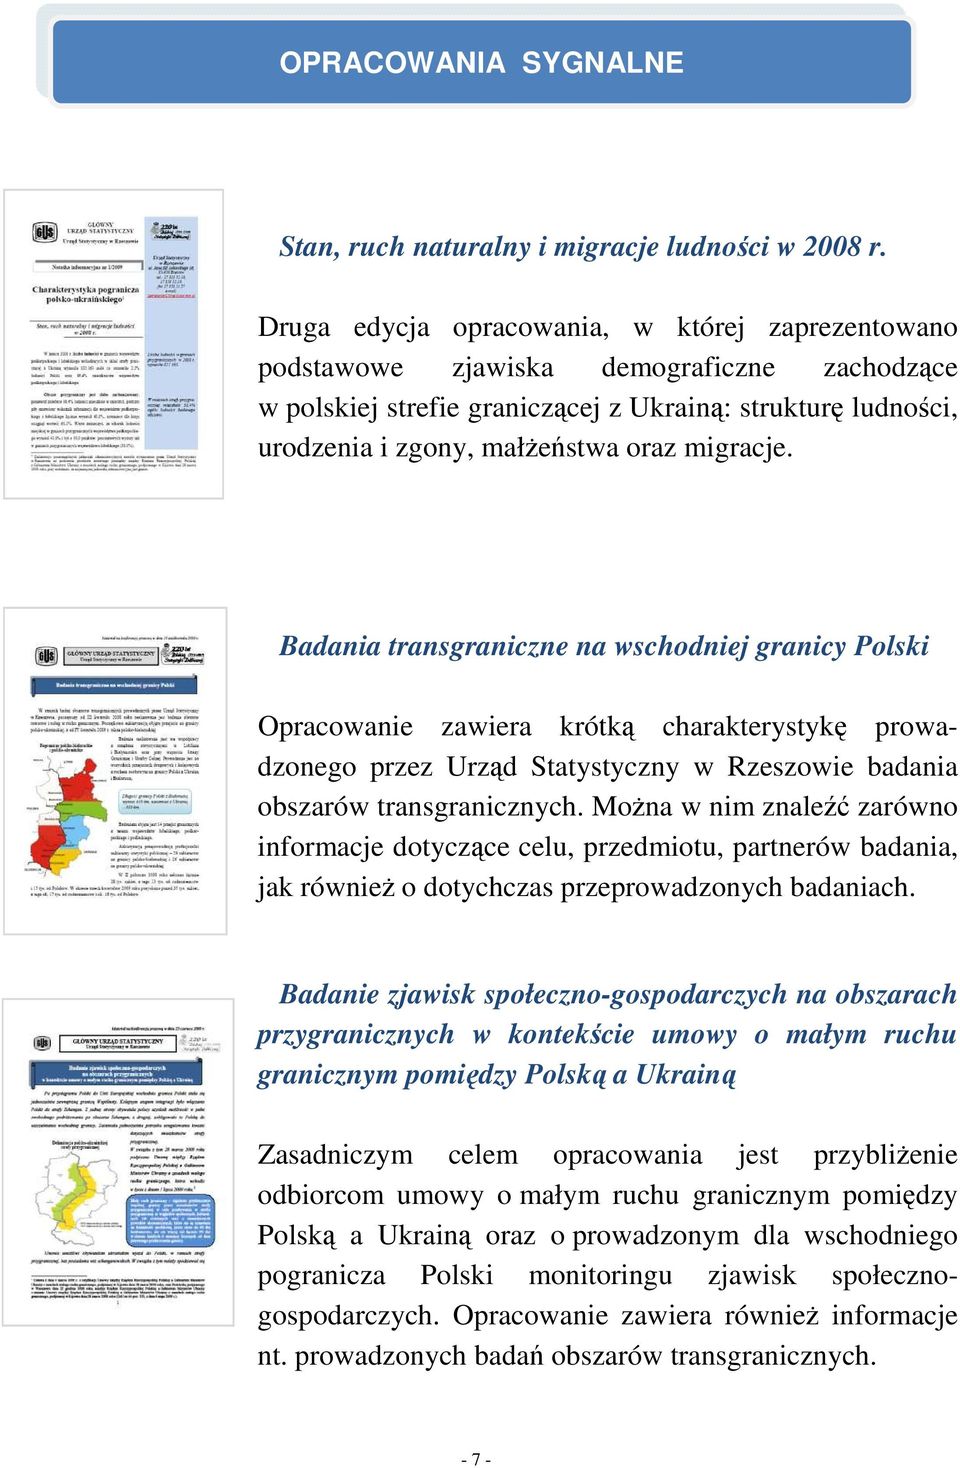 migracje. Badania transgraniczne na wschodniej granicy Polski Opracowanie zawiera krótką charakterystykę prowadzonego przez Urząd Statystyczny w Rzeszowie badania obszarów transgranicznych.